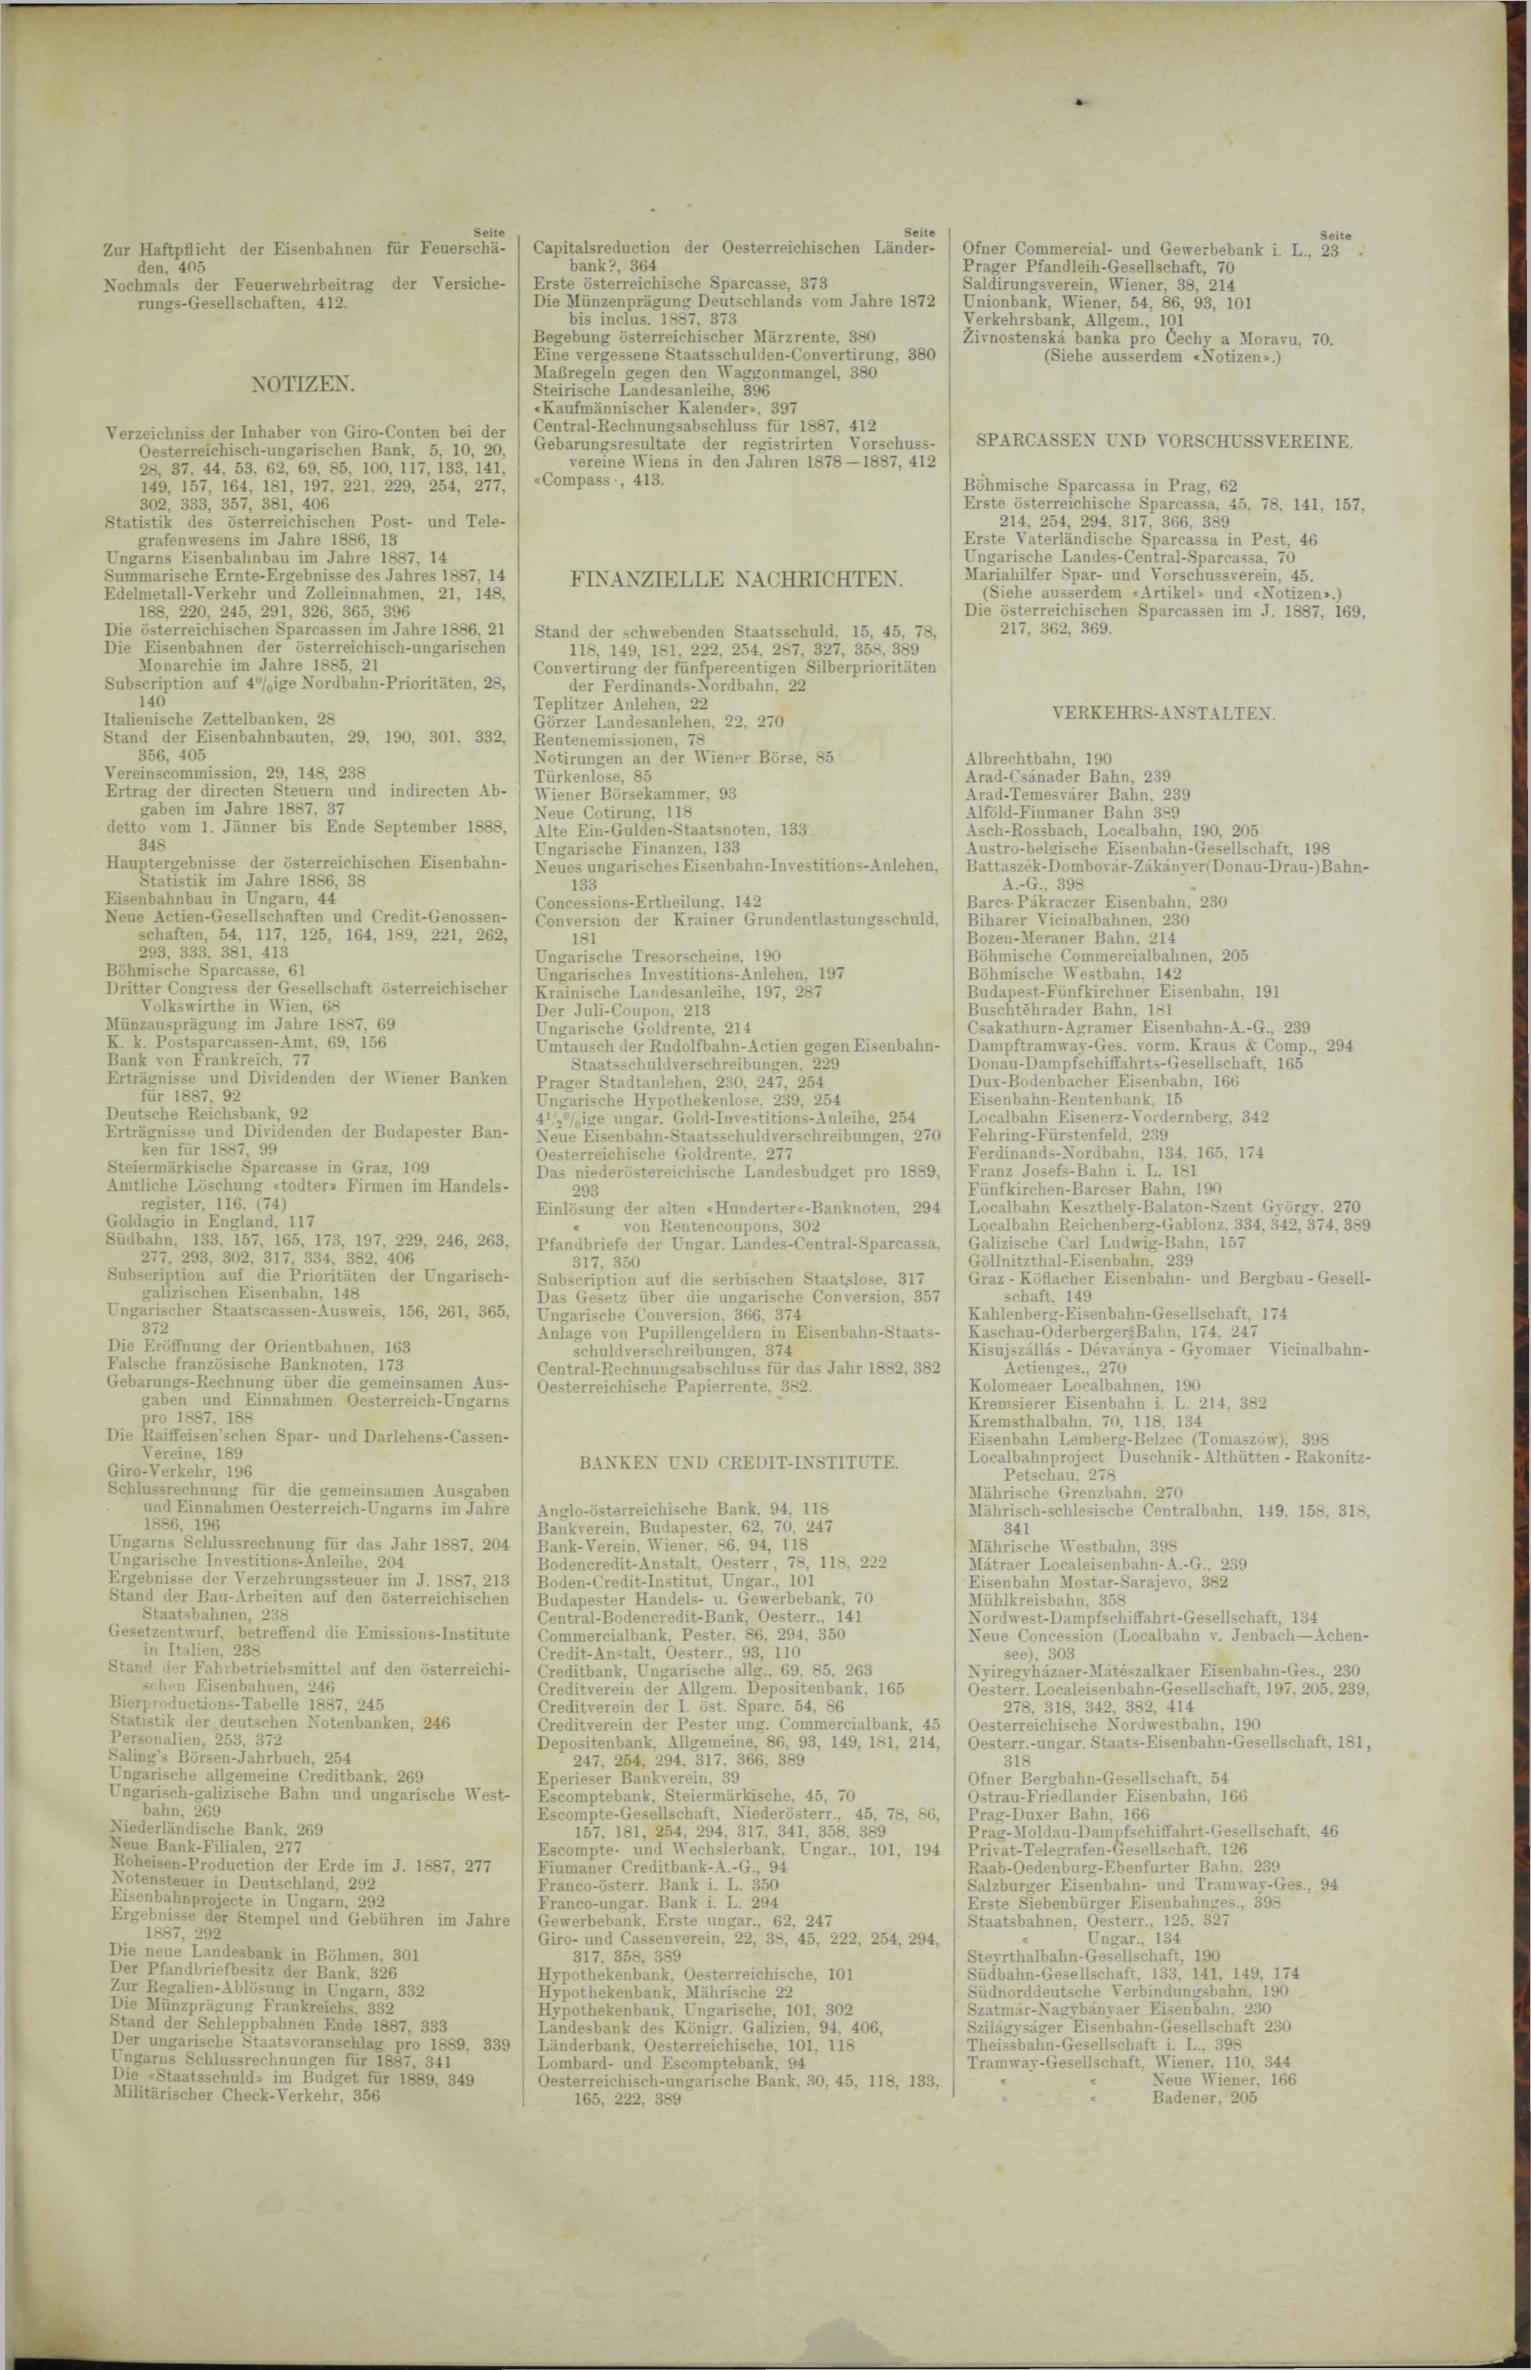 Der Tresor 13.09.1888 - Seite 11